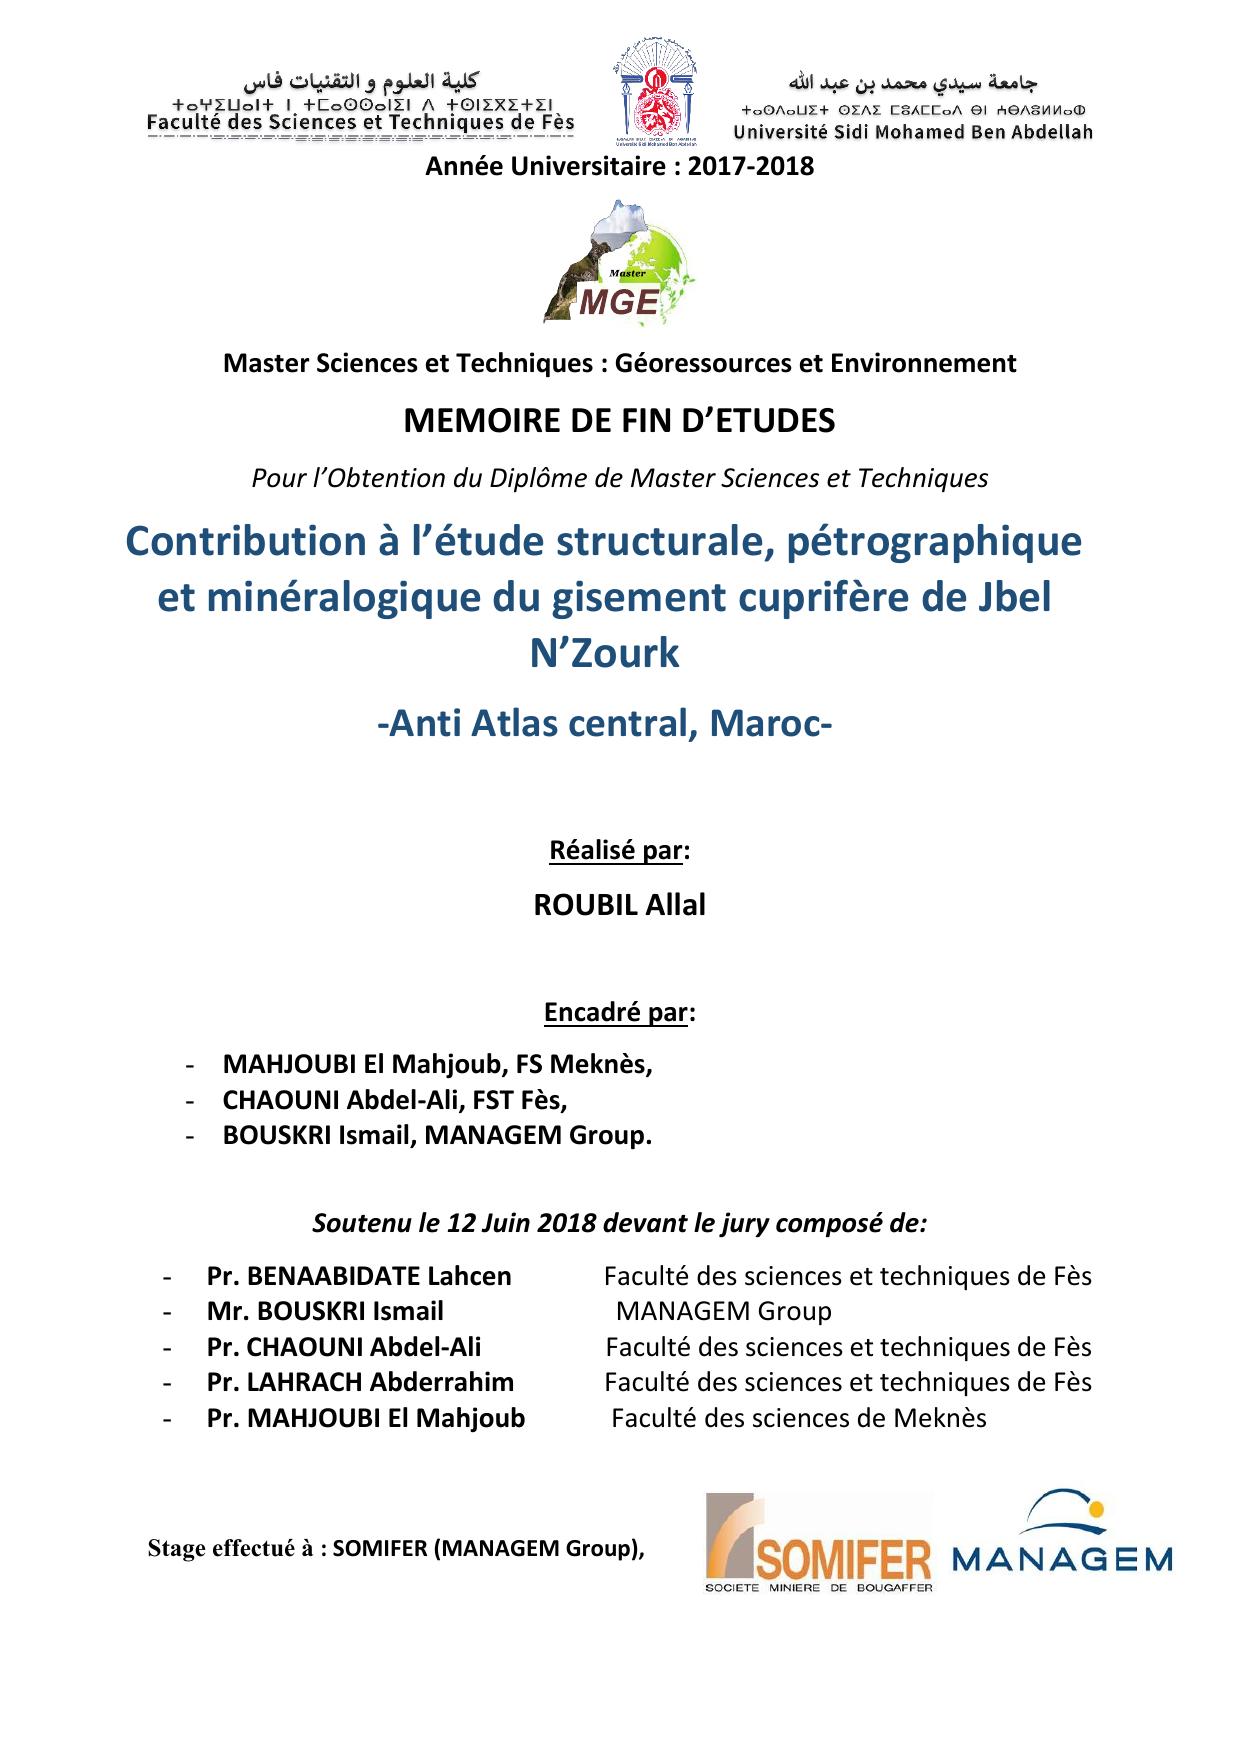 Contribution à l’étude structurale, pétrographique et minéralogique du gisement cuprifère de Jbel N’Zourk -Anti Atlas central, Maroc-